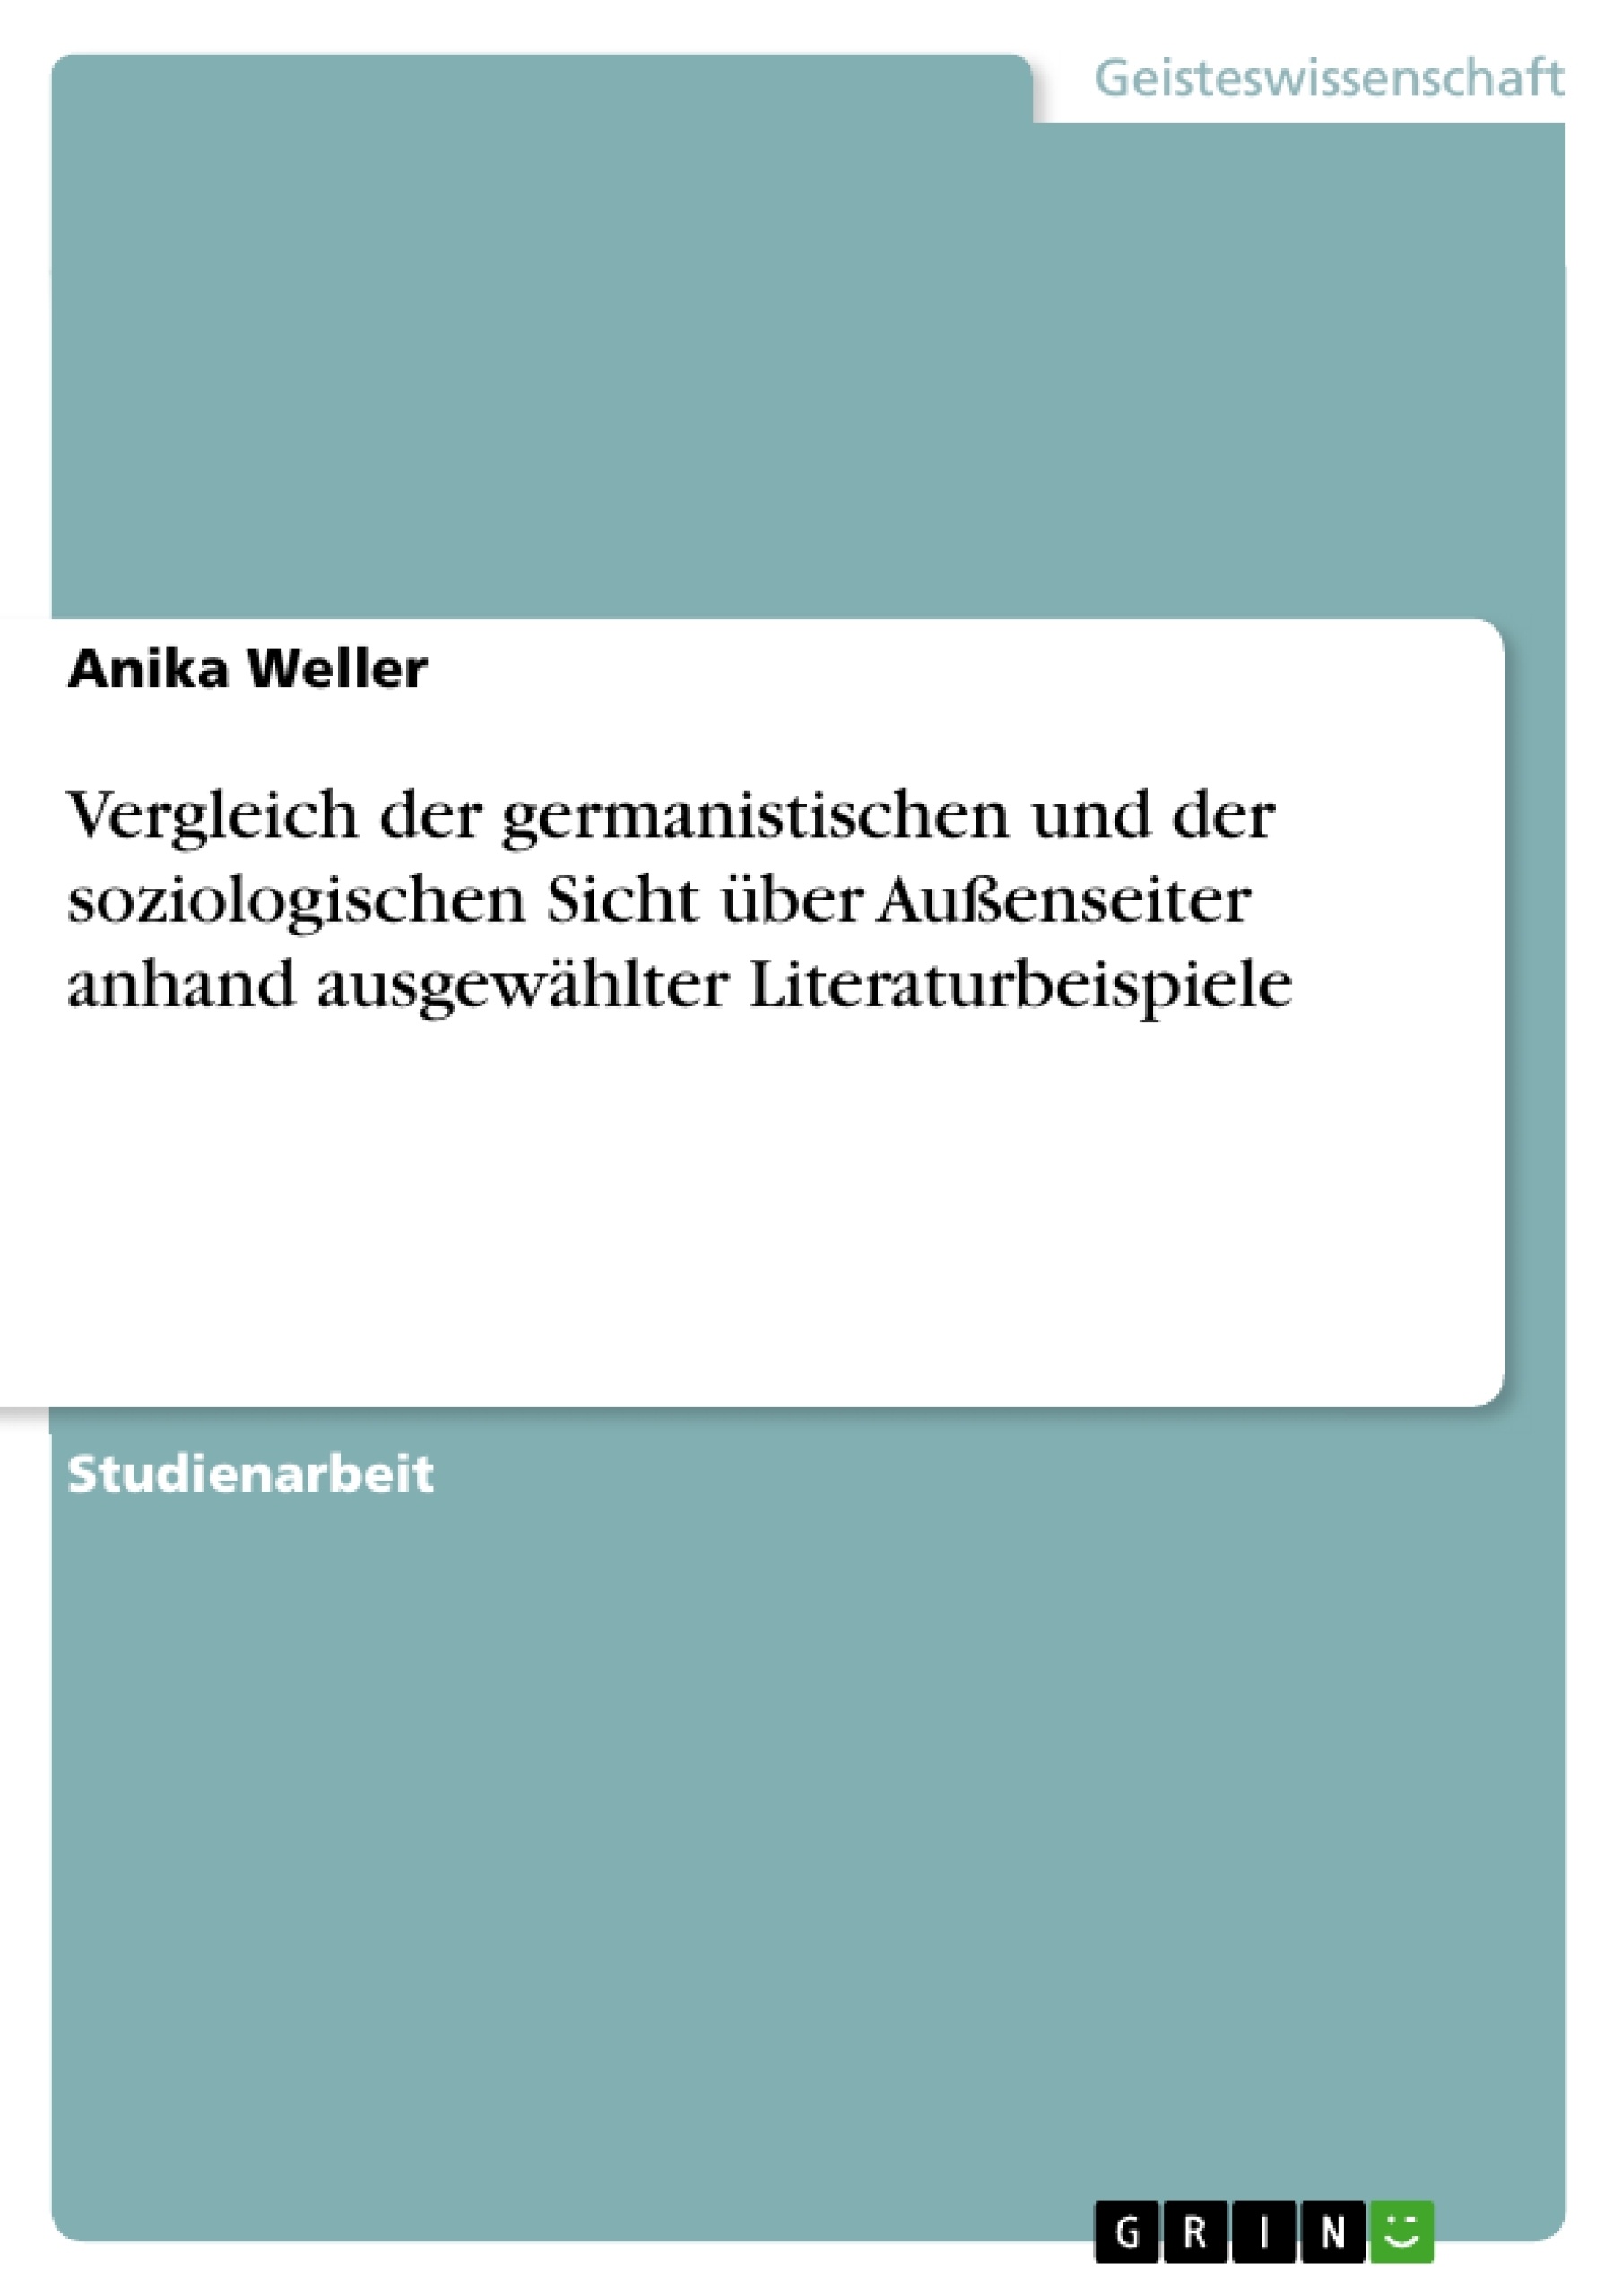 Título: Vergleich der germanistischen und der soziologischen Sicht über Außenseiter anhand ausgewählter Literaturbeispiele